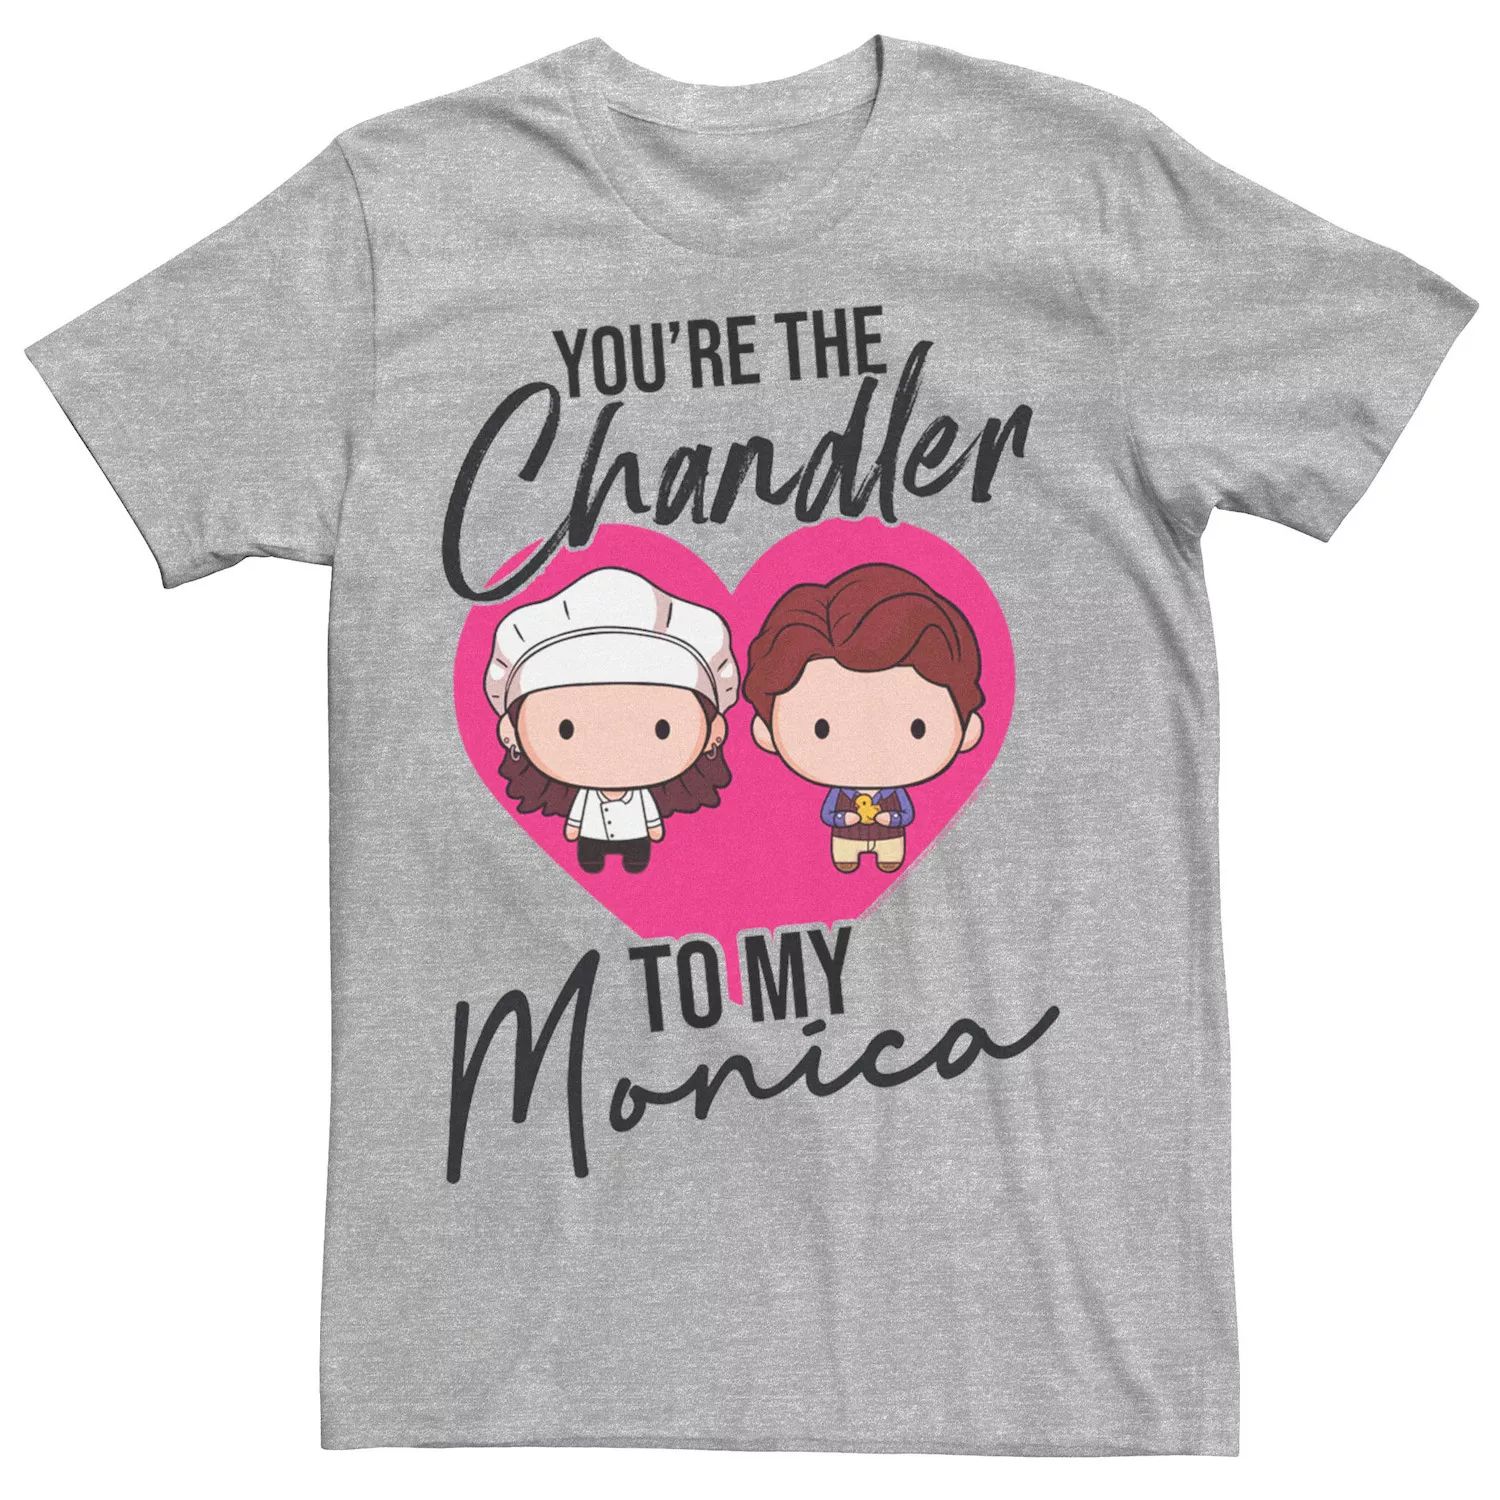 Друзья мужчин: ты Чендлер в моей футболке с Моникой Licensed Character фигурка утка tubbz друзья чендлер бинг